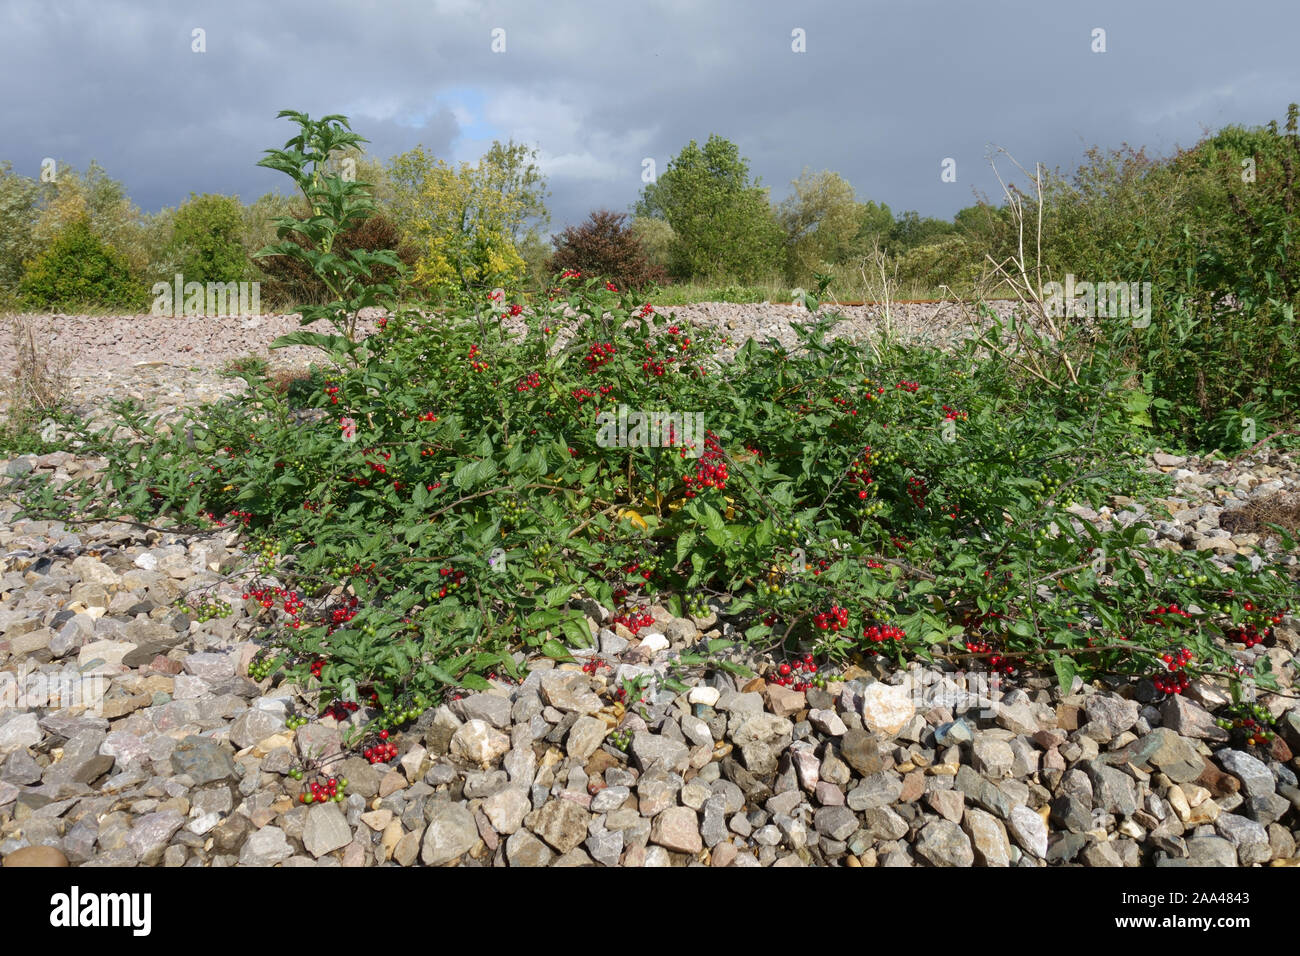 Nightshate bittersweel ou ligneuses (Solanum dulcamara) plante aux baies rouge vif poussant dans le gravier à côté d'une voie de chemin de fer, Septembre Banque D'Images